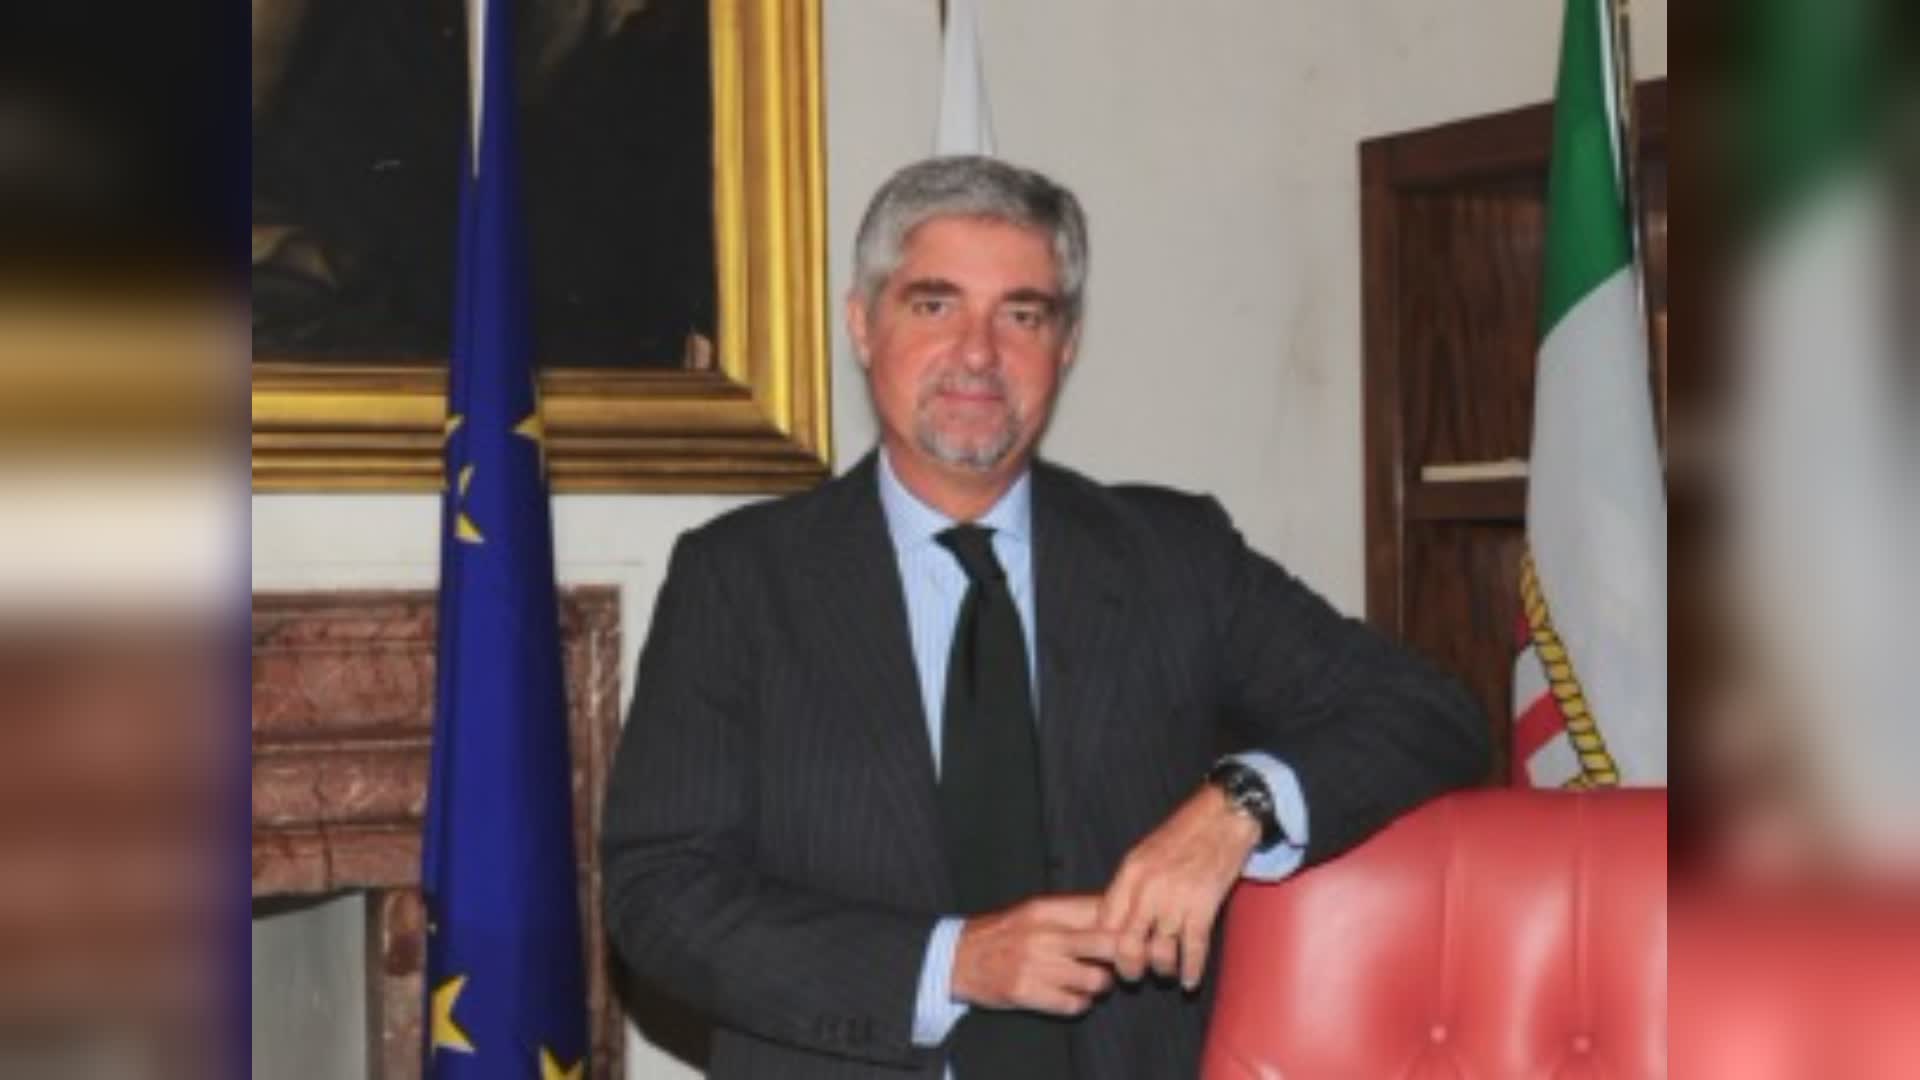 Eletto il nuovo consiglio della Federazione del Mare: confermato Mattioli alla presidenza